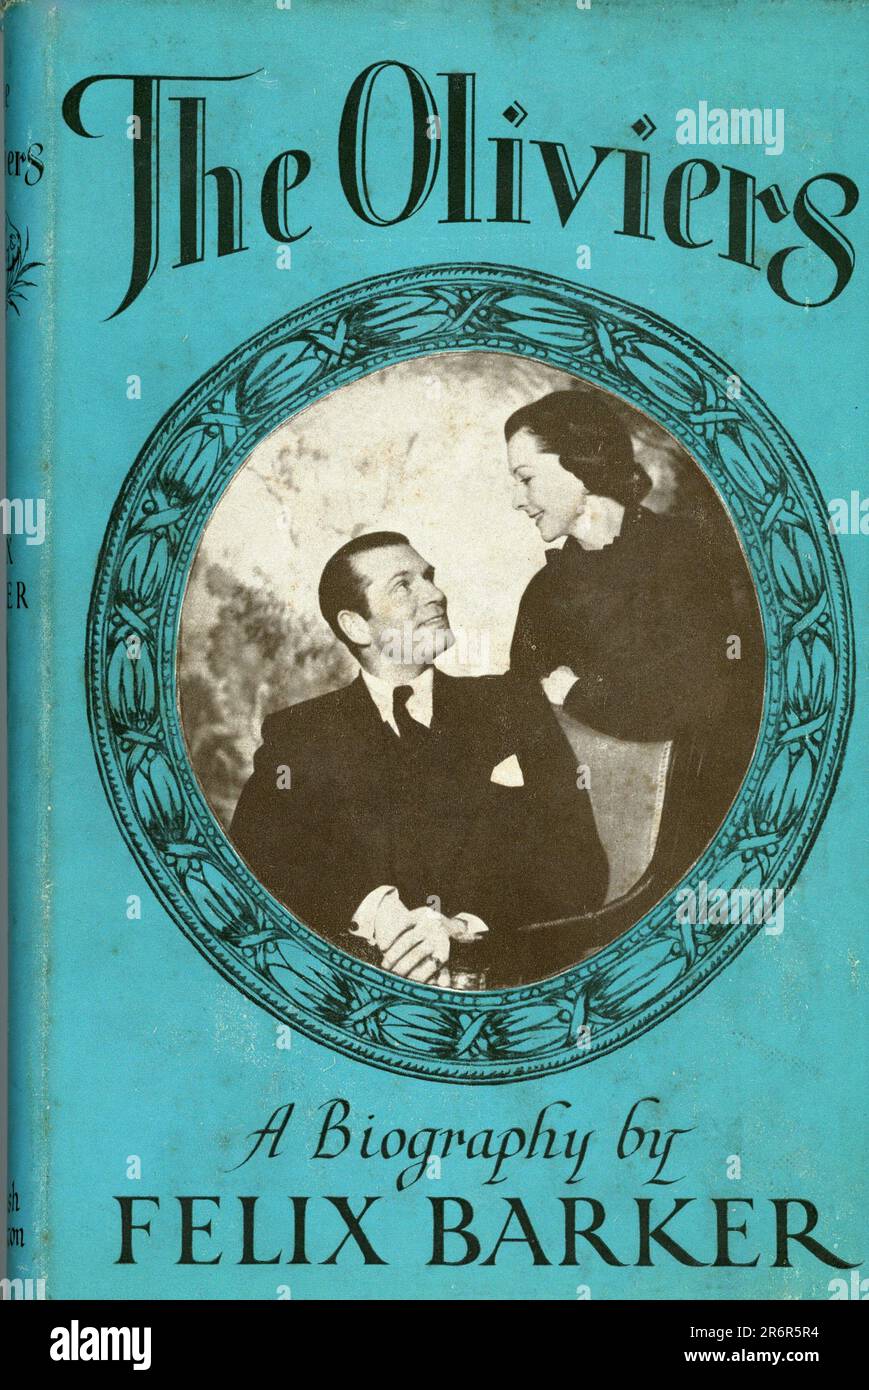 Front of Dust Jacket / couverture du livre THE OLIVIERS (Laurence Olivier et Vivien Leigh) Une Biographie de FELIX BARKER publié en Angleterre en 1953 par Hamish Hamilton Ltd, 90 Great Russell Street, Londres W.C.1 Banque D'Images